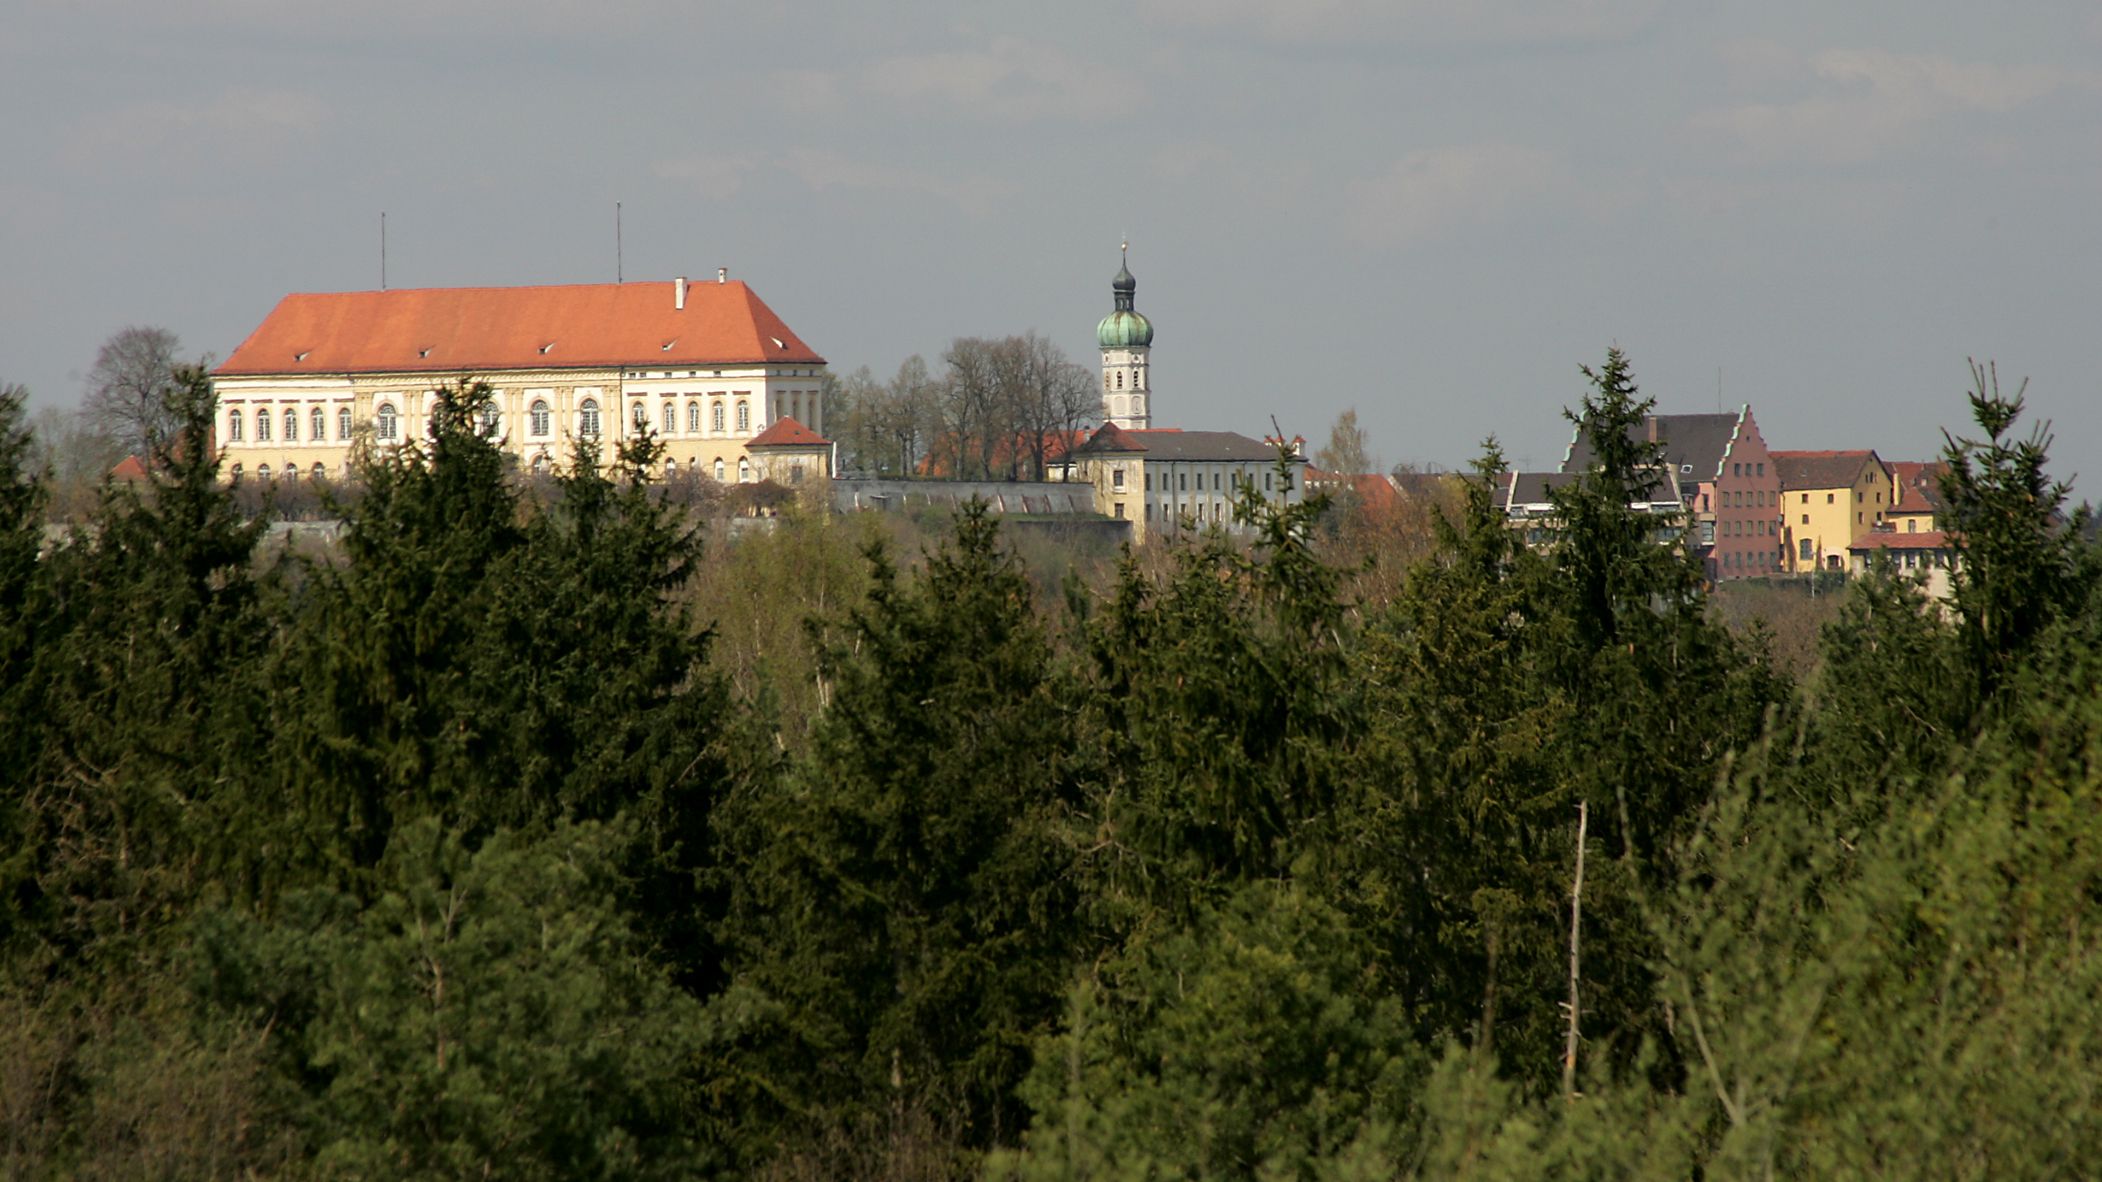 Fotografie Dachauer Schloss vom Aussichtspunkt im Naherholungsgebiet "Schinderkreppe" in Dachau Süd